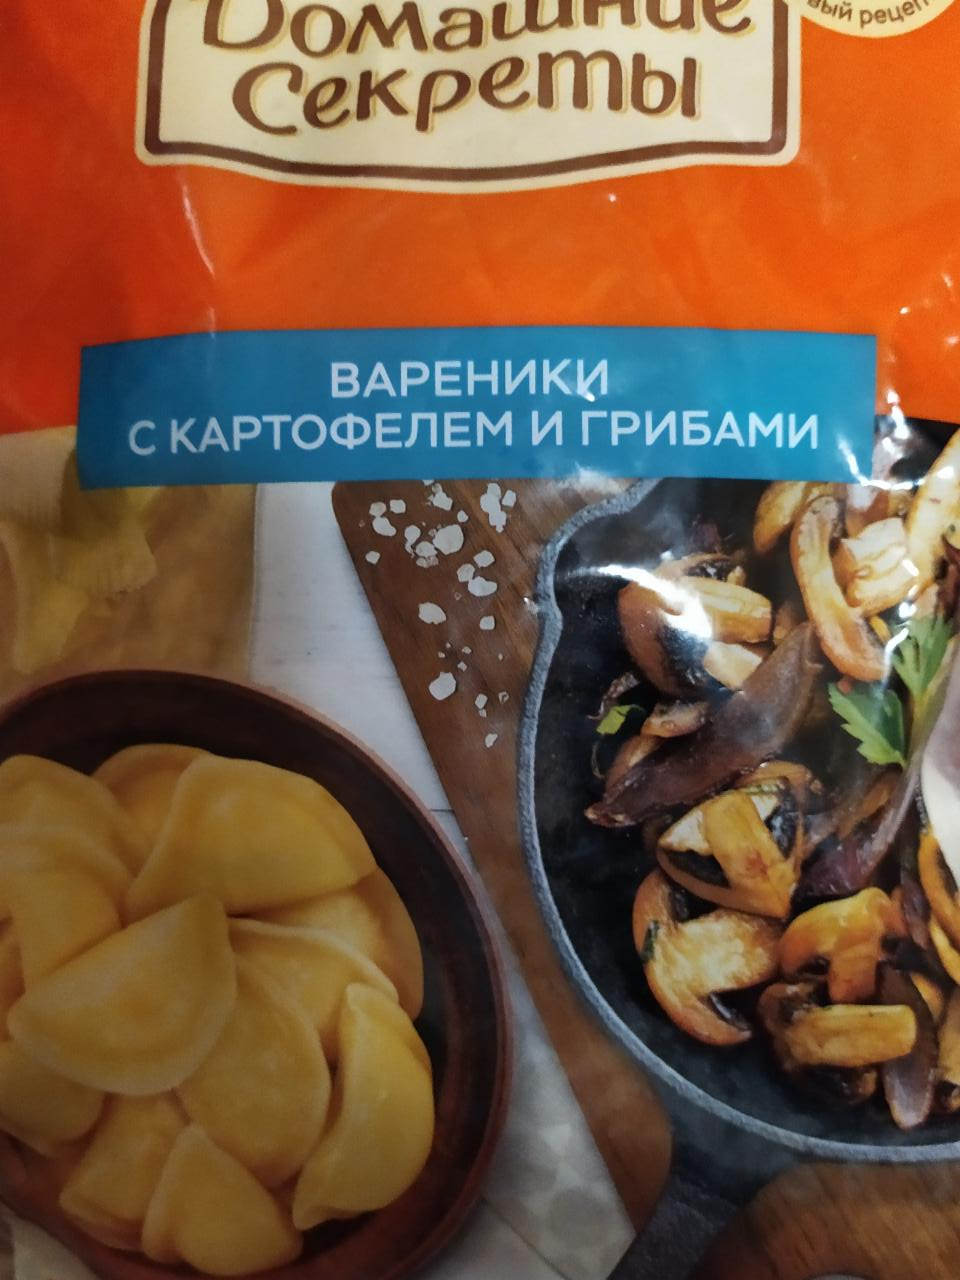 Фото - Вареники с картофелем и грибами Домашние секреты Сибирский гурман